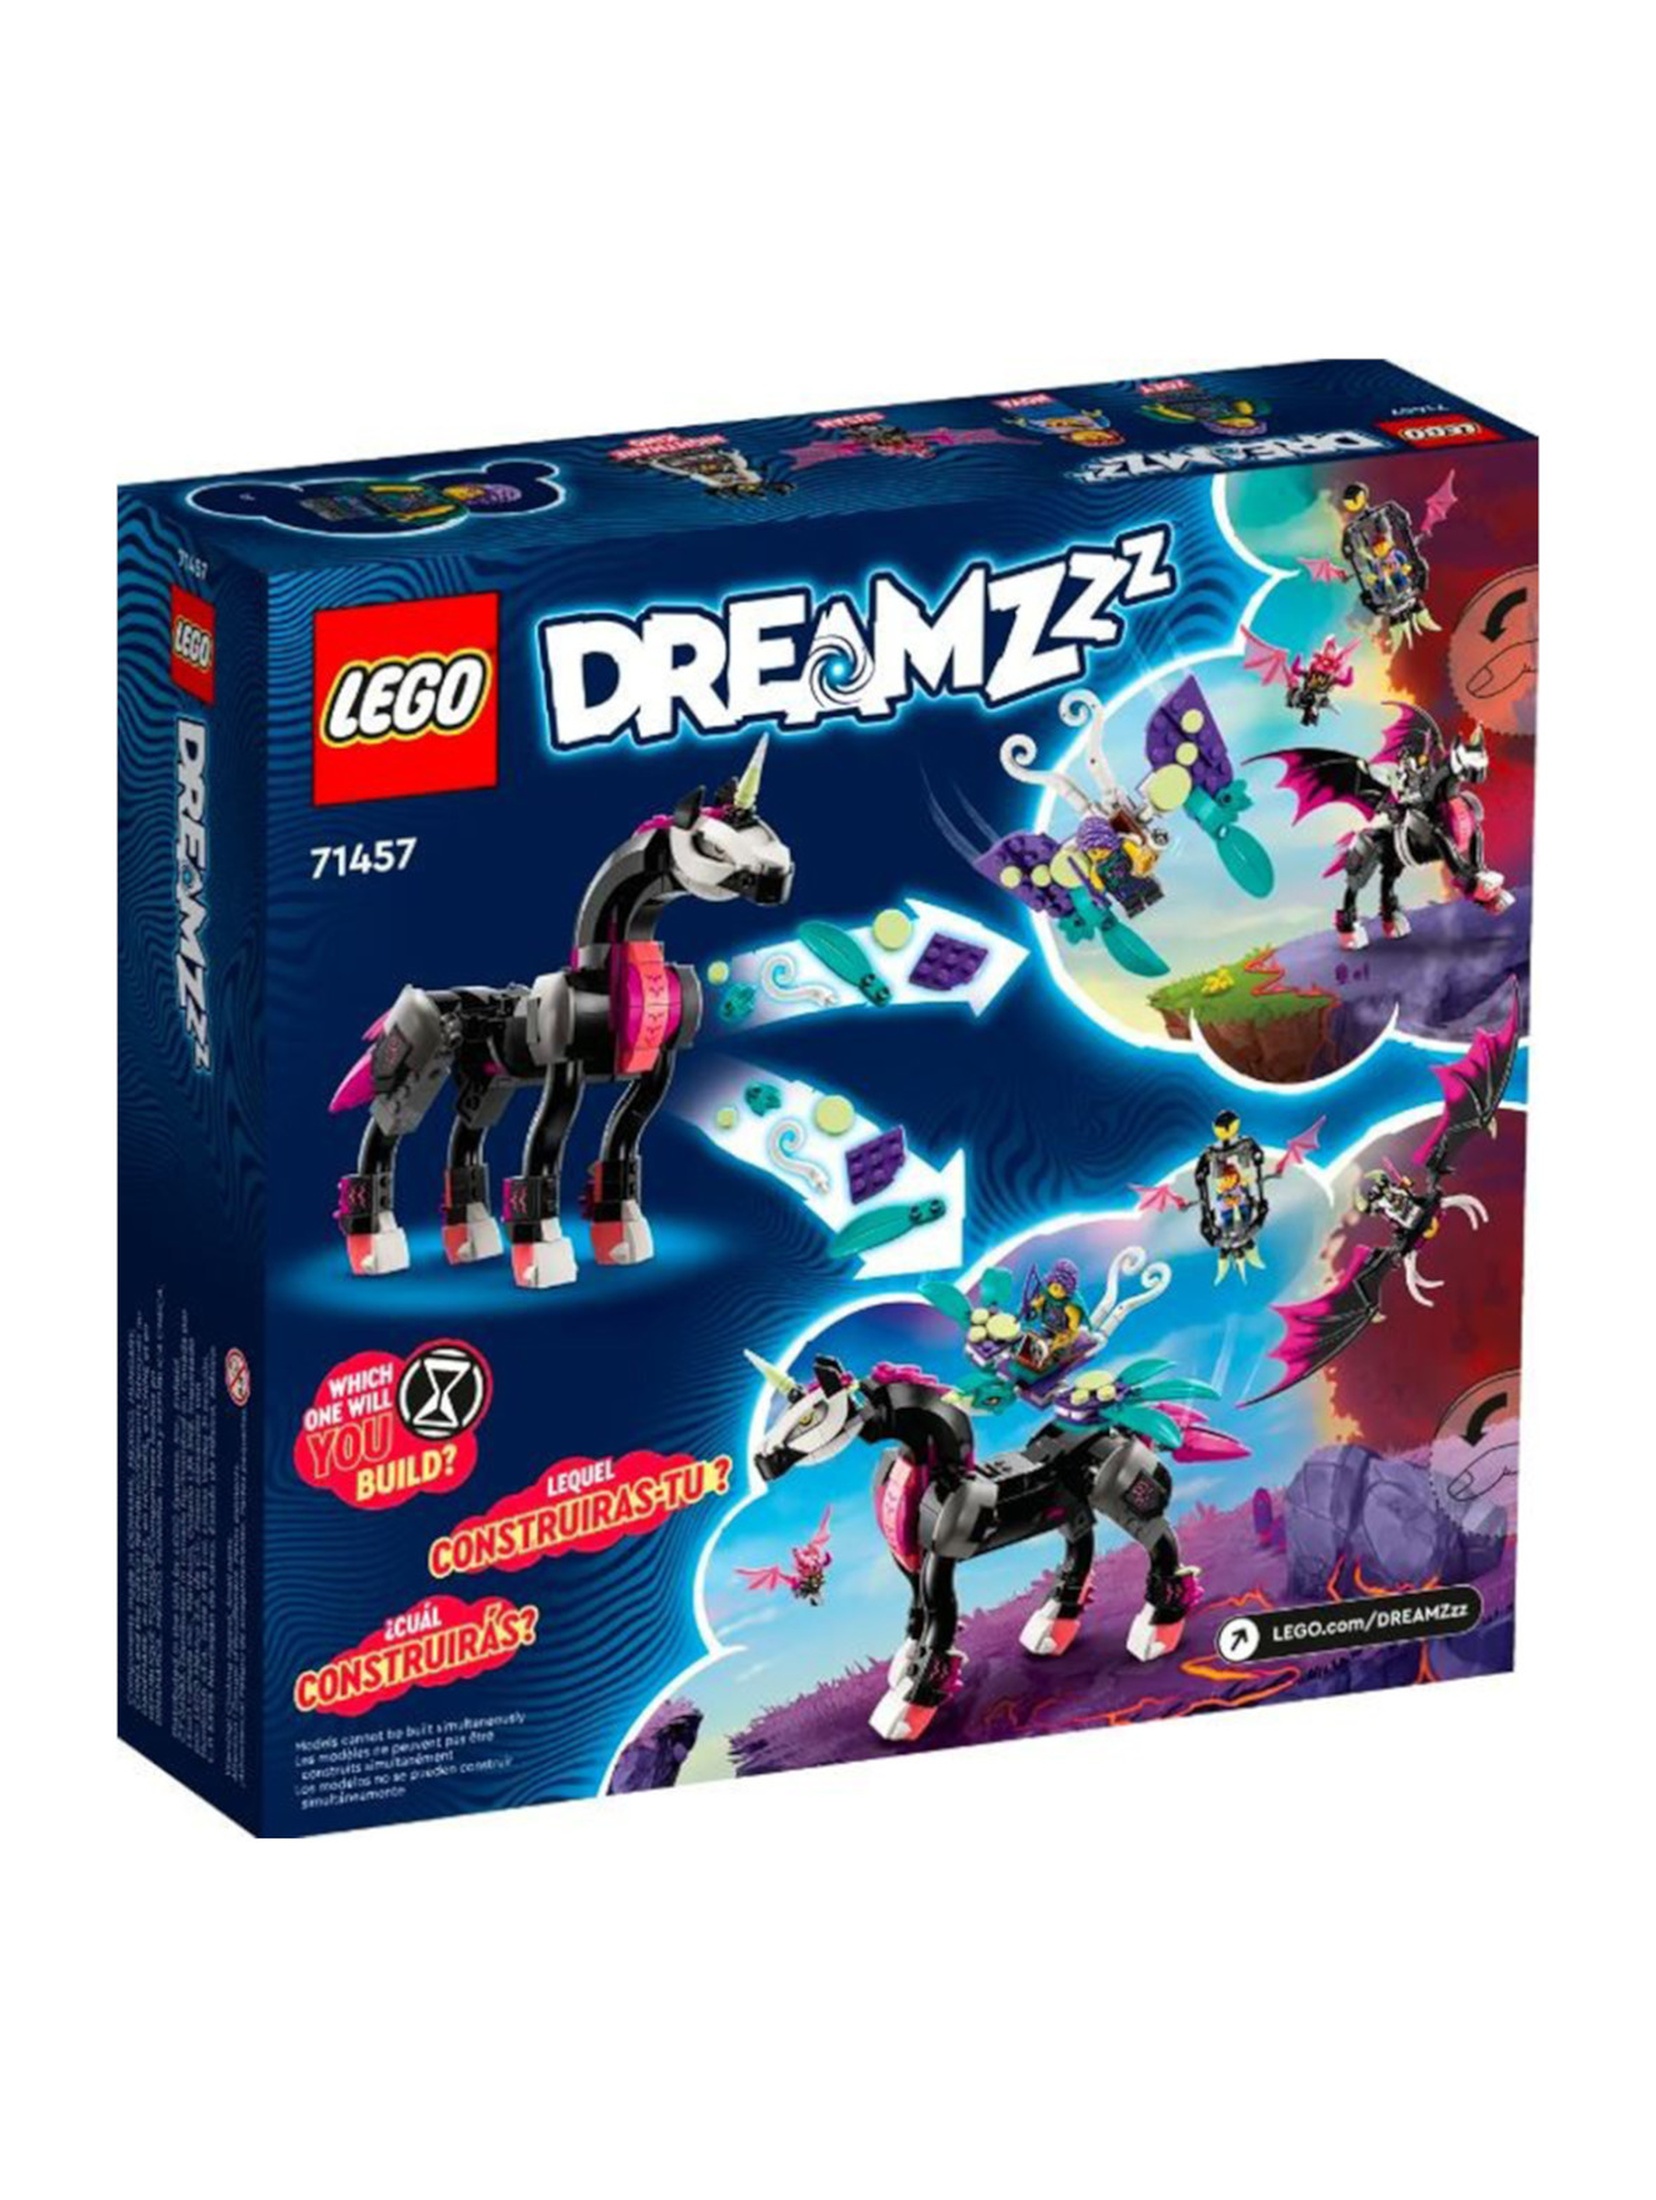 Klocki LEGO DREAMZzz 71457 Latający koń Pegasus - 482 elemnty, wiek 8 +